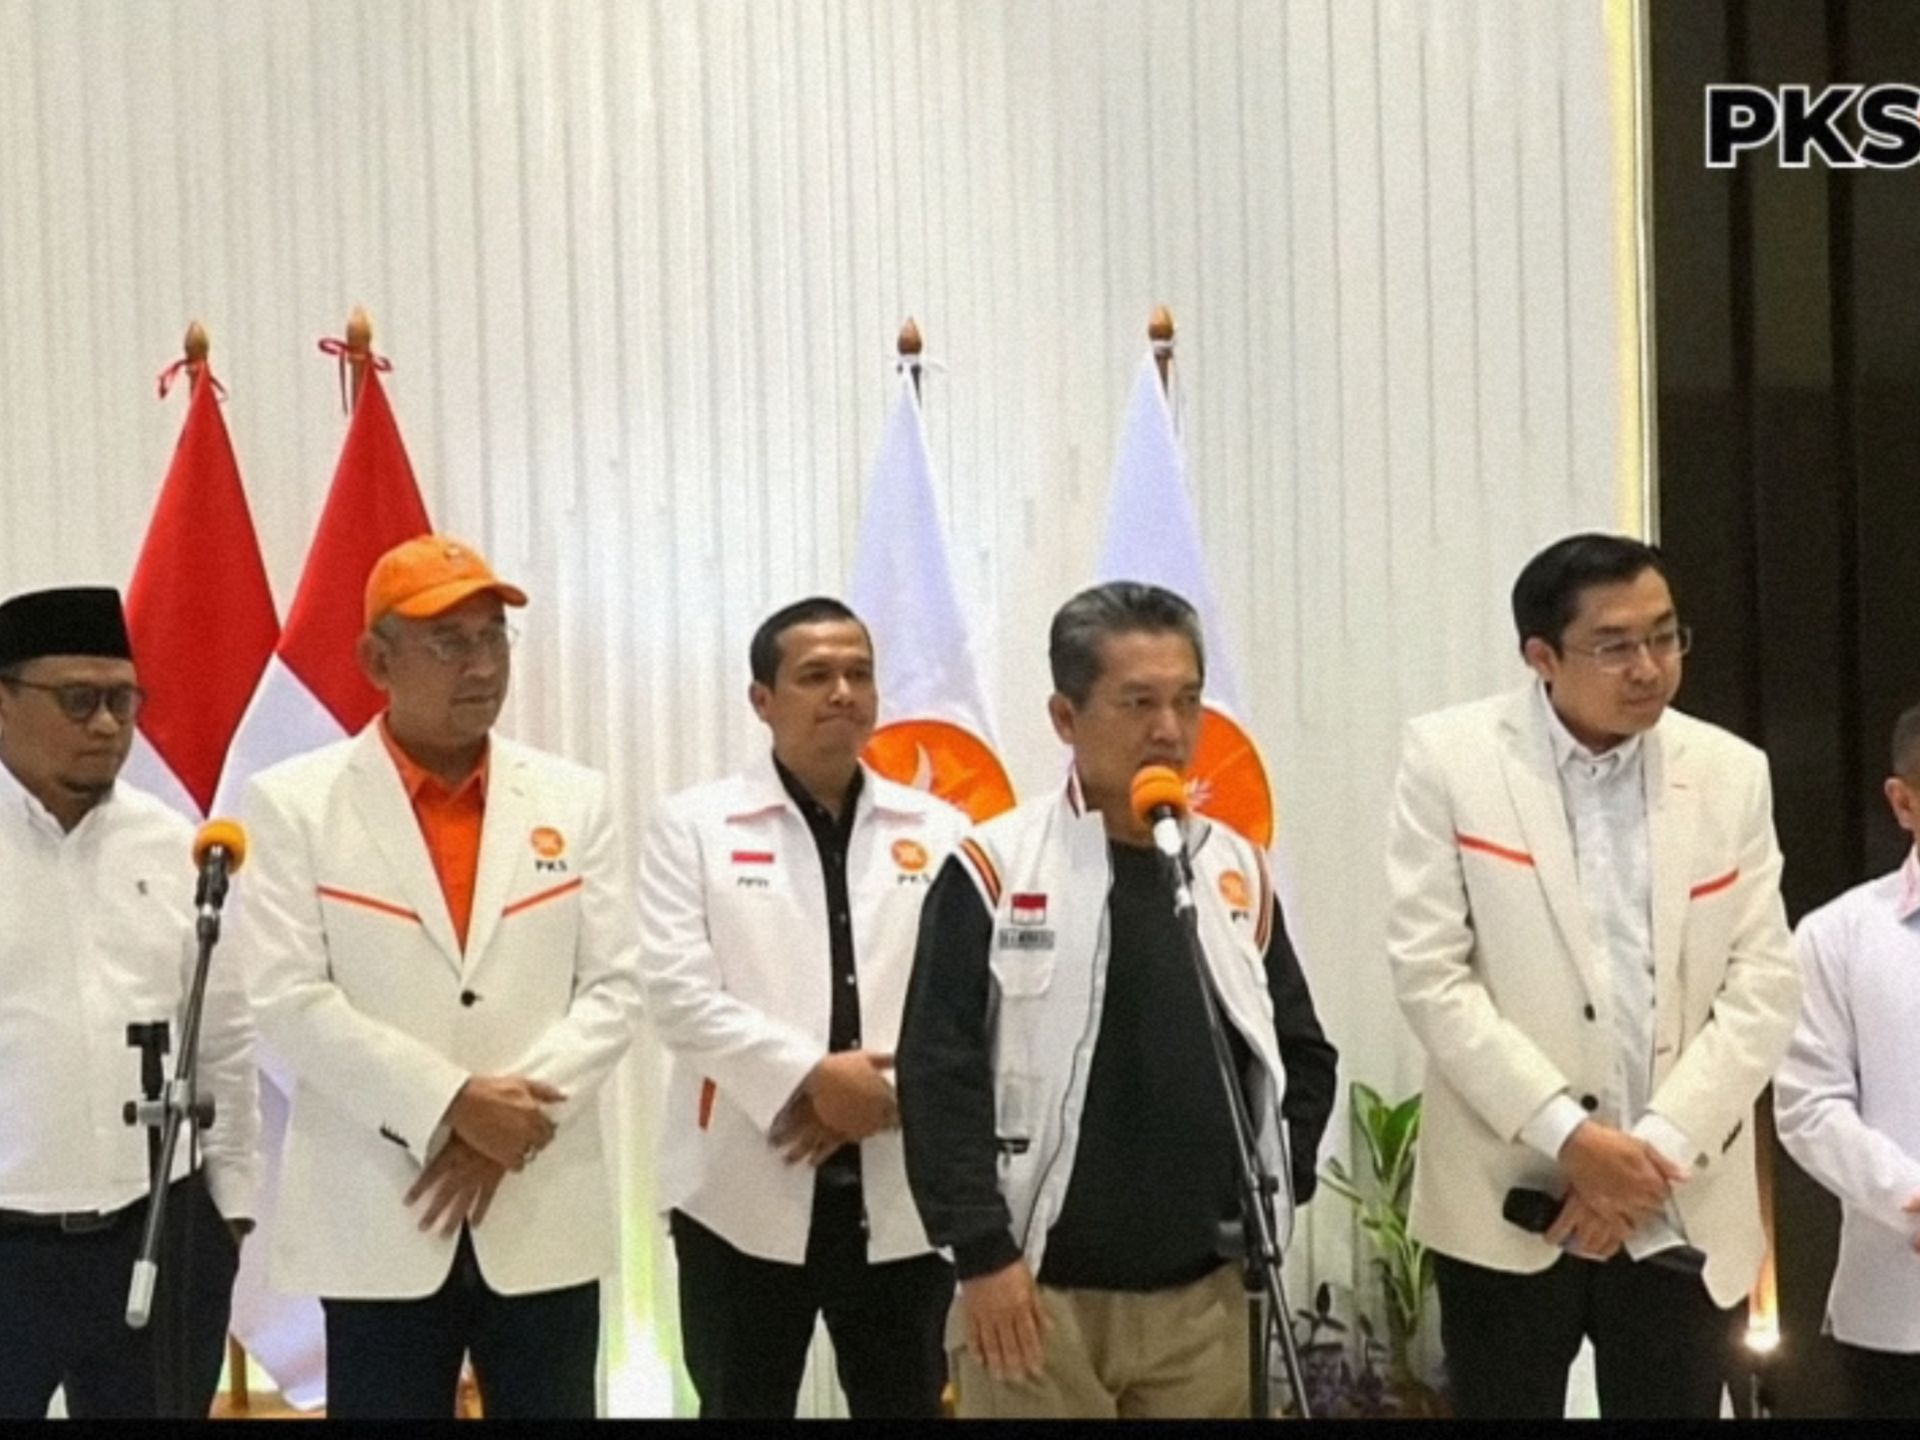 PKS Tetap Mendukung Anies Baswedan Walapun wakil  Muhaimin Iskandar